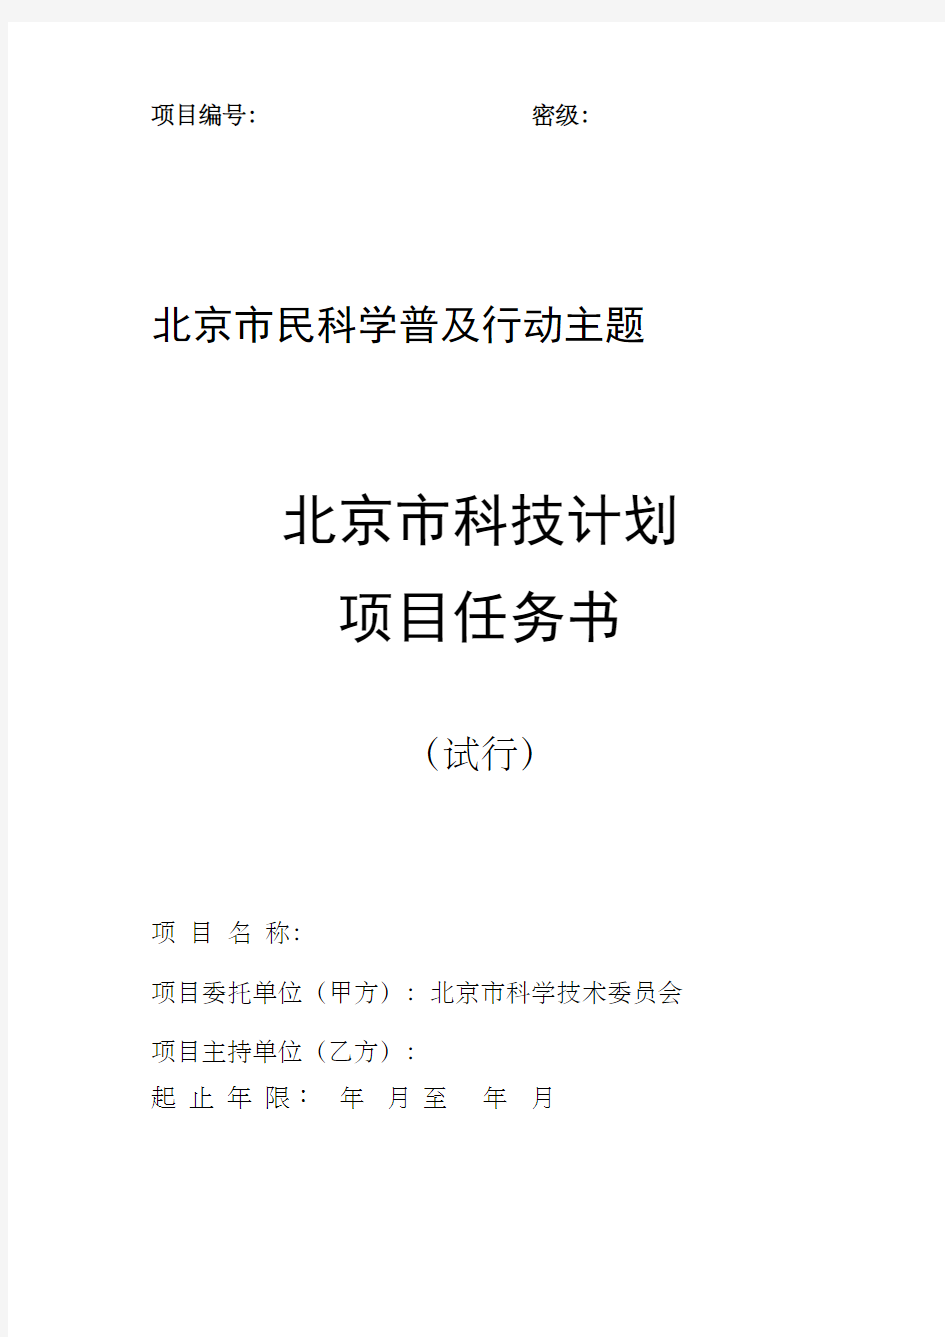 北京市科技计划项目任务书